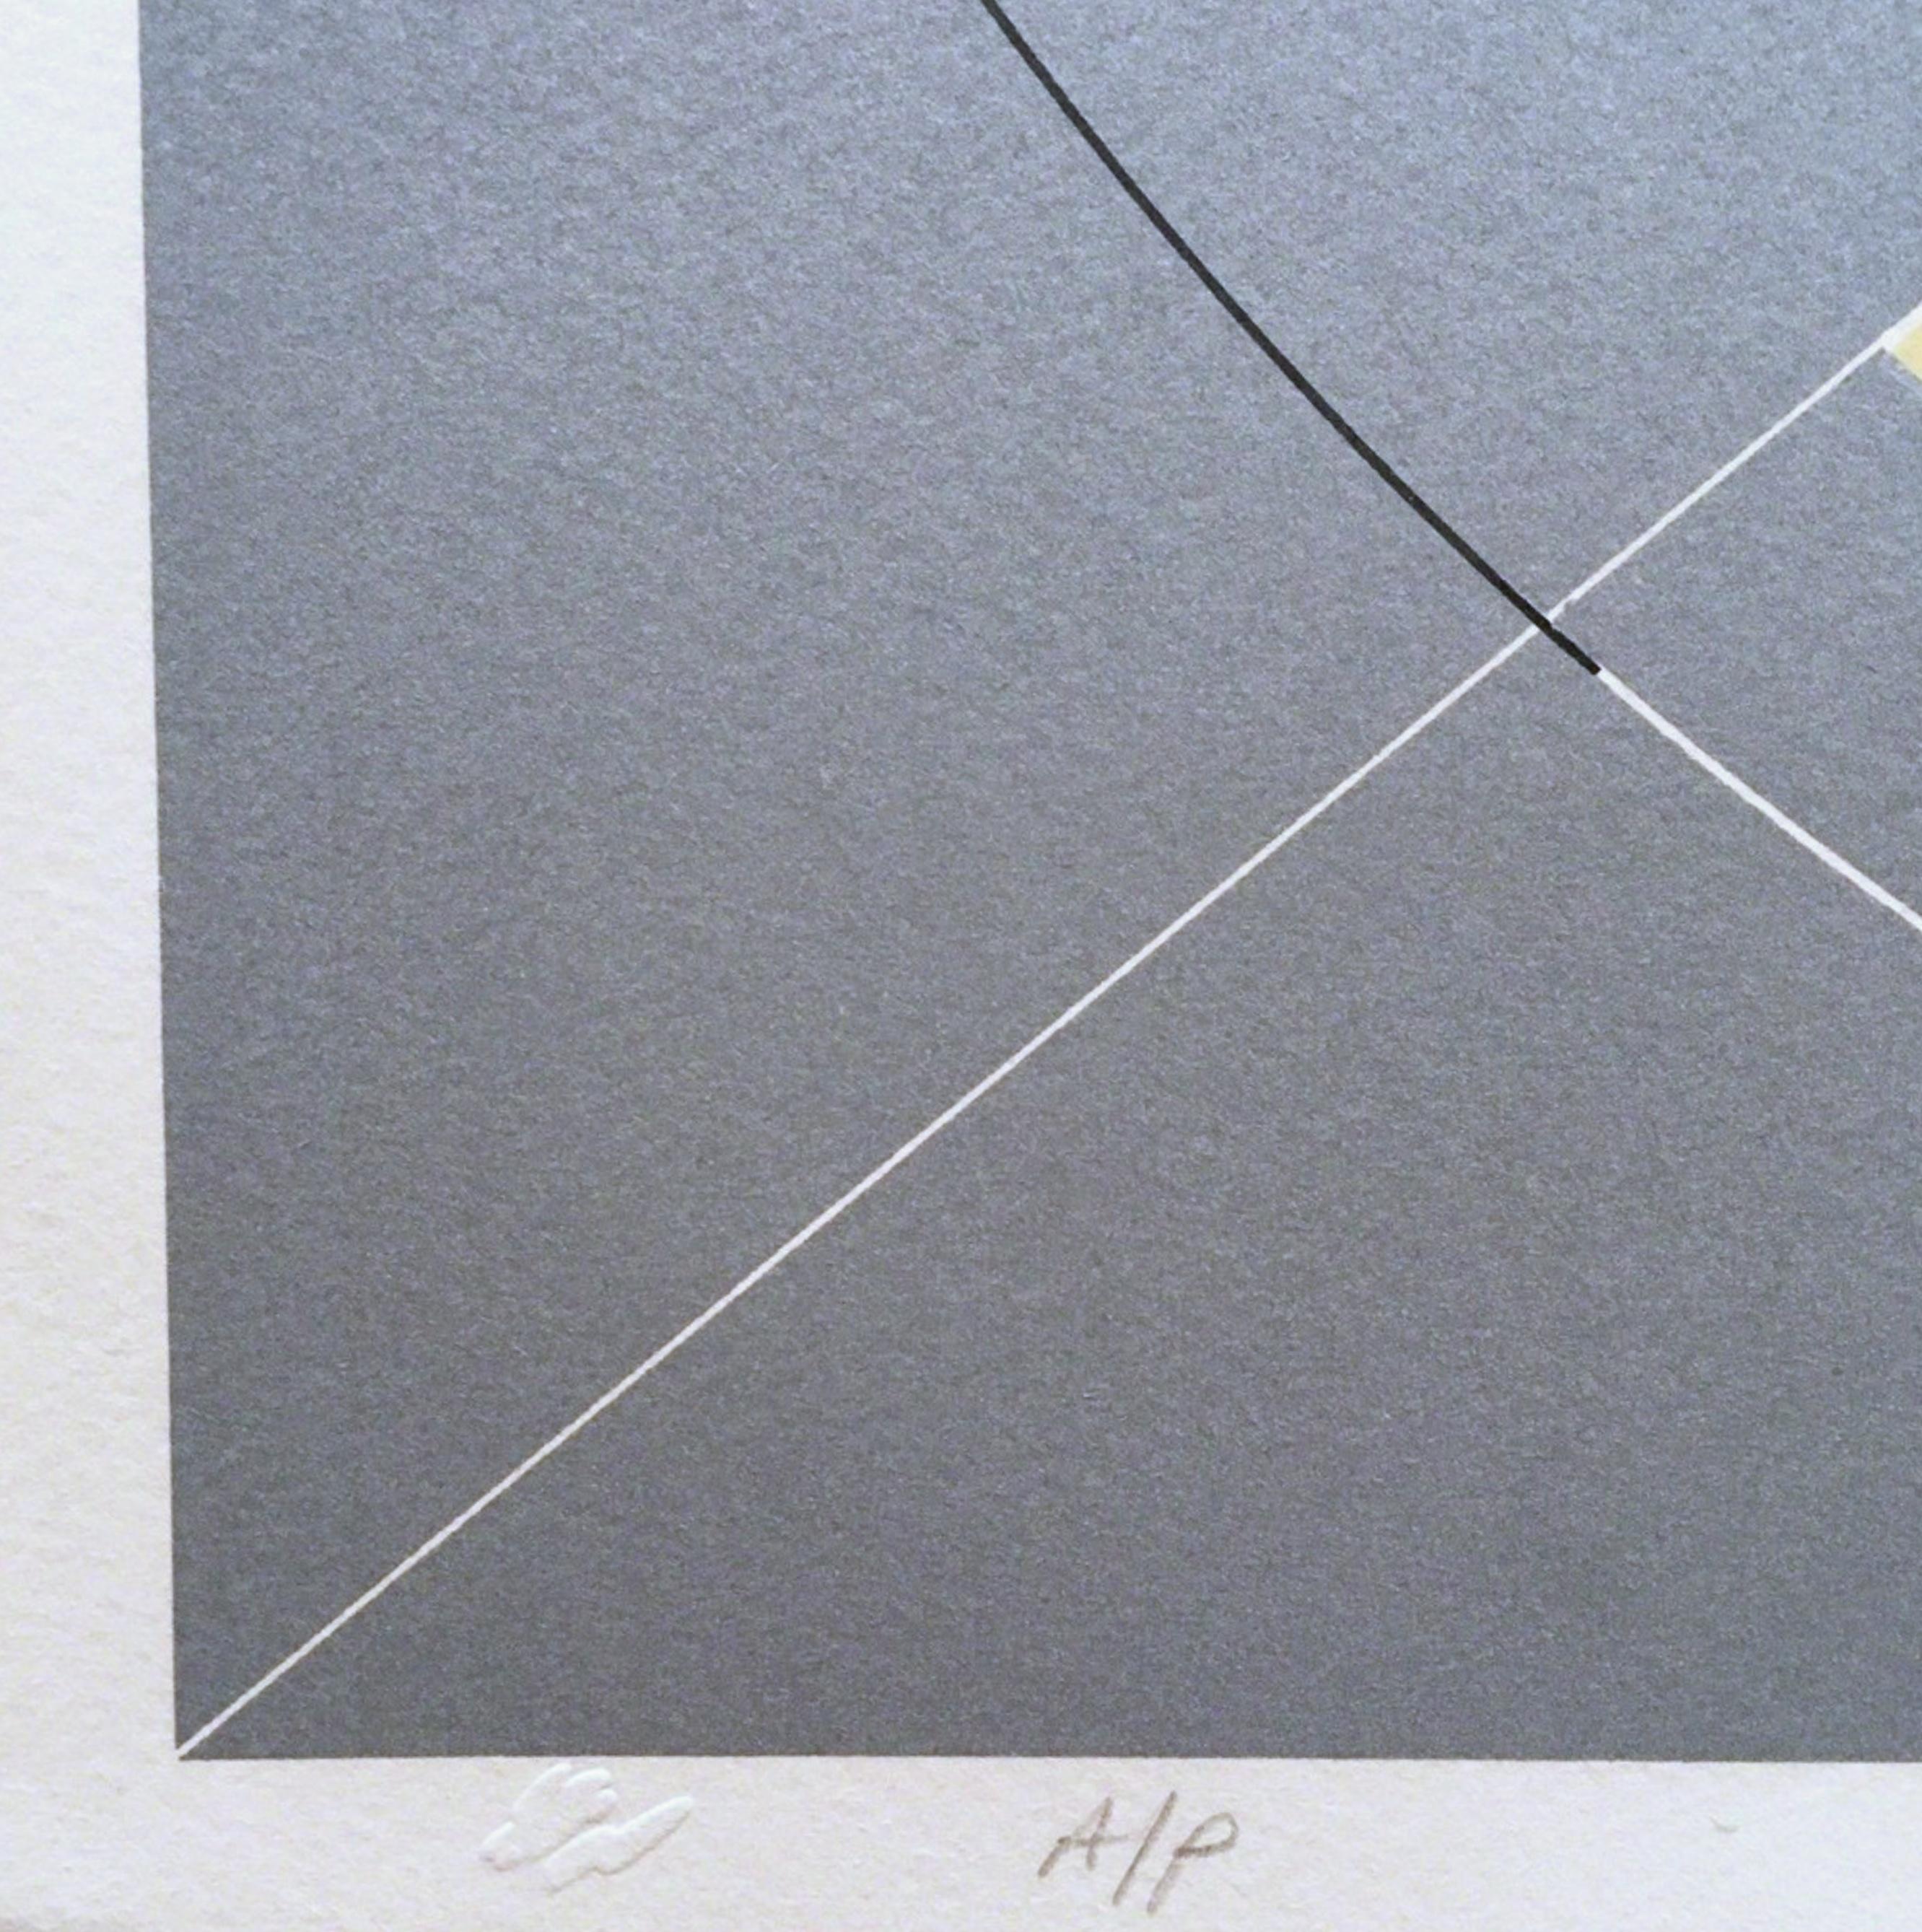 Tony Delap
Florian, enfant de l'air, 1977
Lithographie sur papier de couverture Arches
Signé, titré, annoté et daté au crayon au recto.
Cette lithographie, 